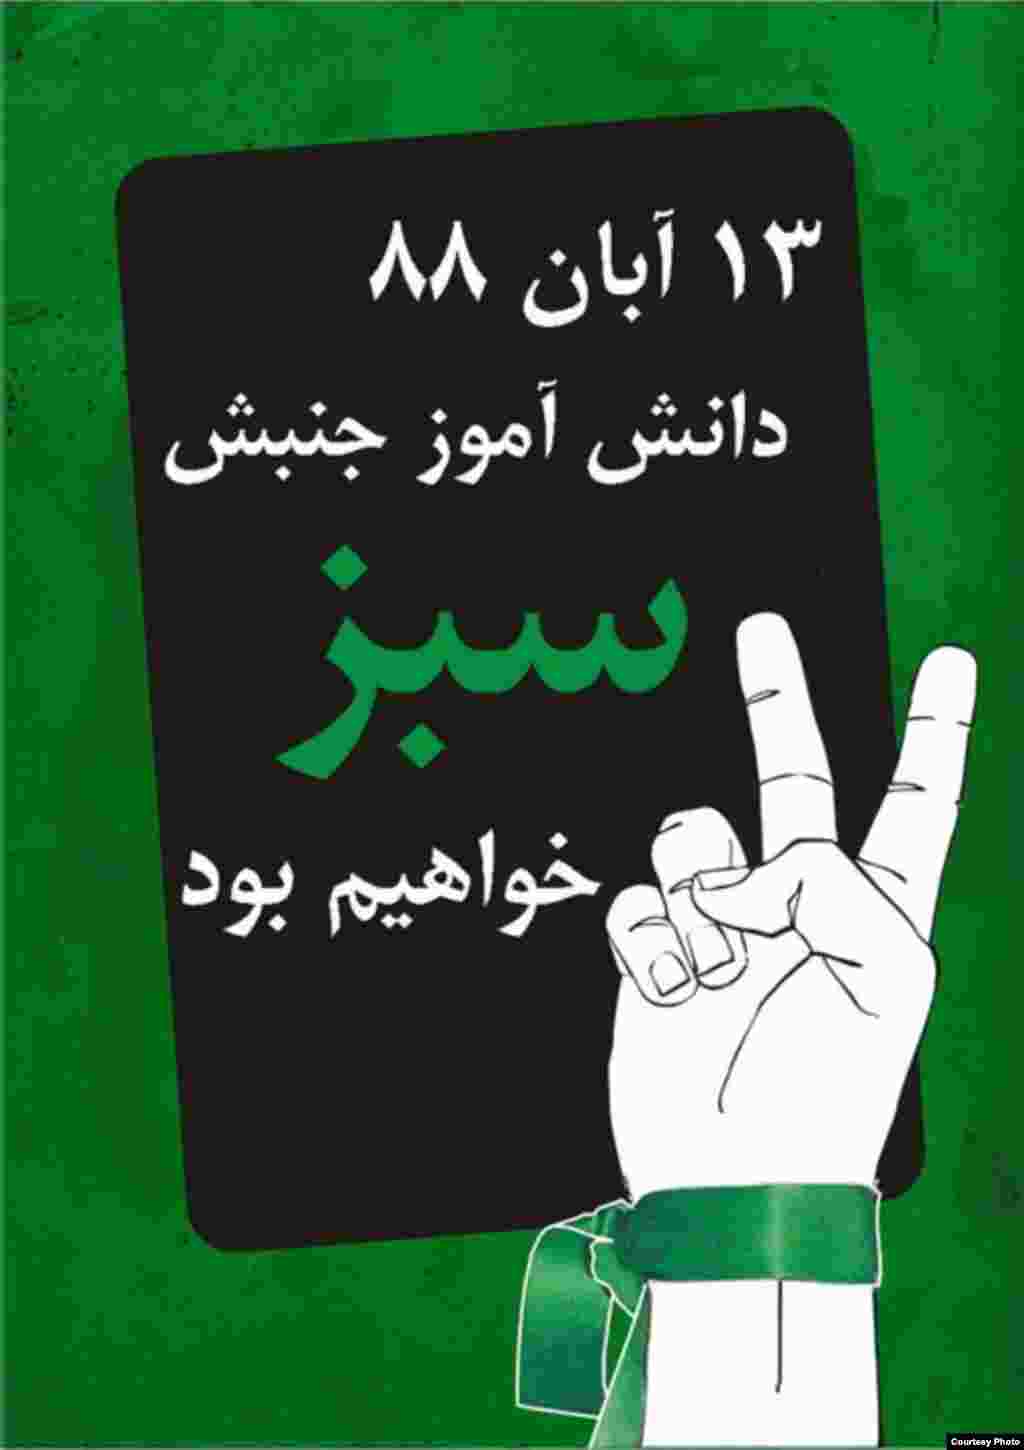 میرحسین موسوی، از رهبران جنبش سبز ایران، 13 آبان را سبزترین روز سال خواند، روزی که به گفته وی، یاد آور آن است که «مردم رهبران ما هستند». به دنبال این فراخوان هنرمندان همصدا با جنبش سبز دست به طراحی پوسترهایی برای این «سبزترین روز سال» زدند.